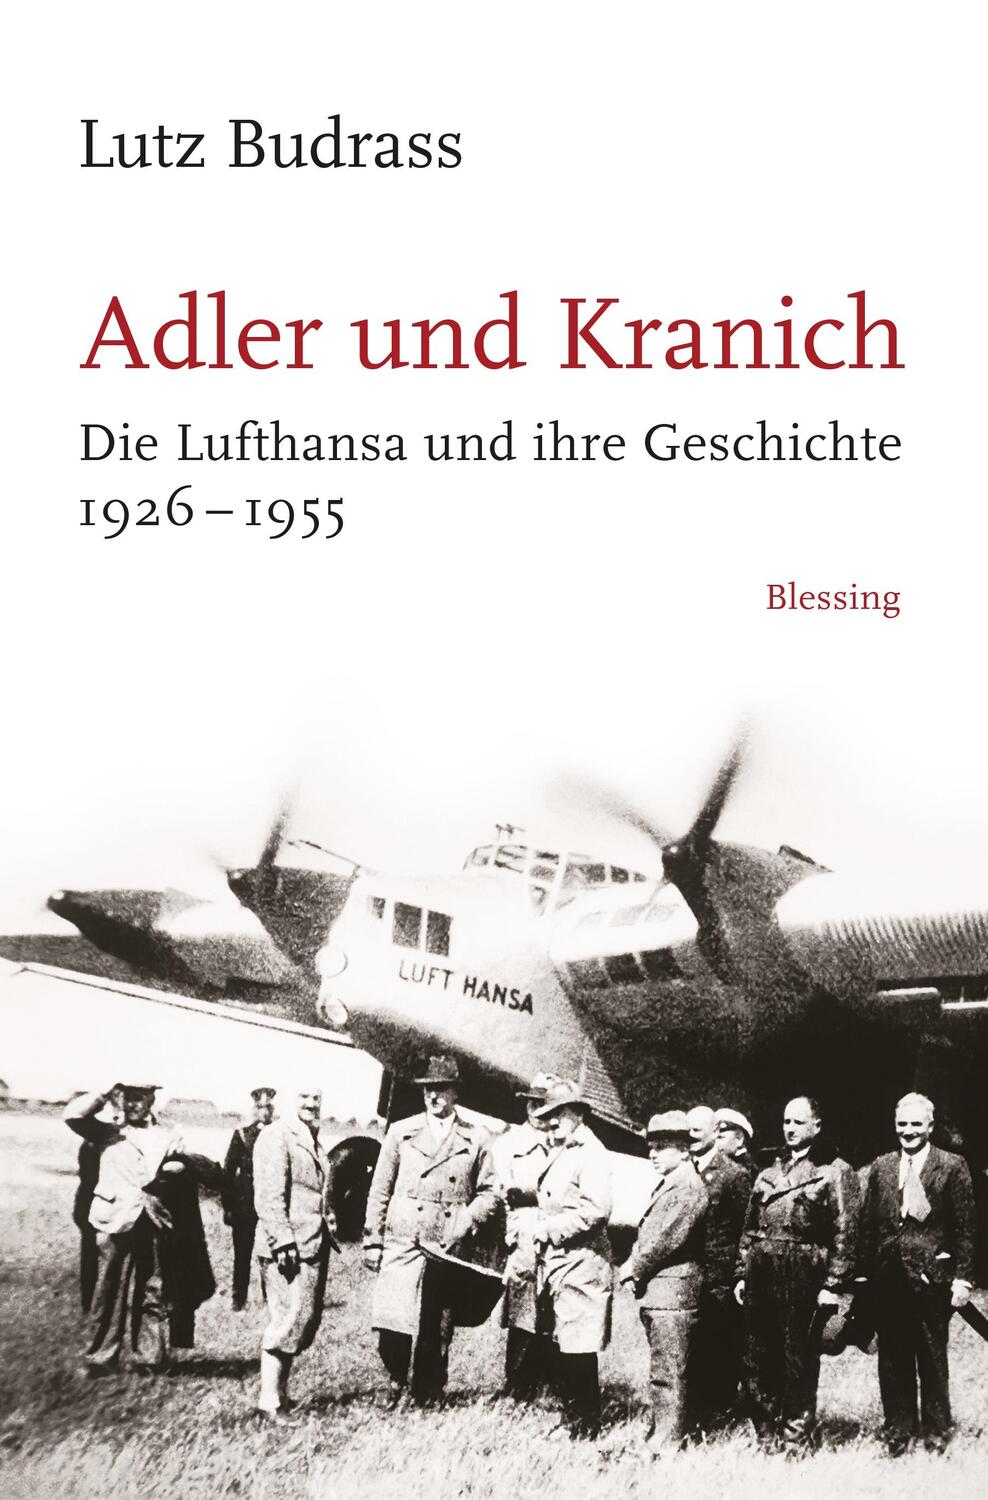 Adler und Kranich - Budrass, Lutz